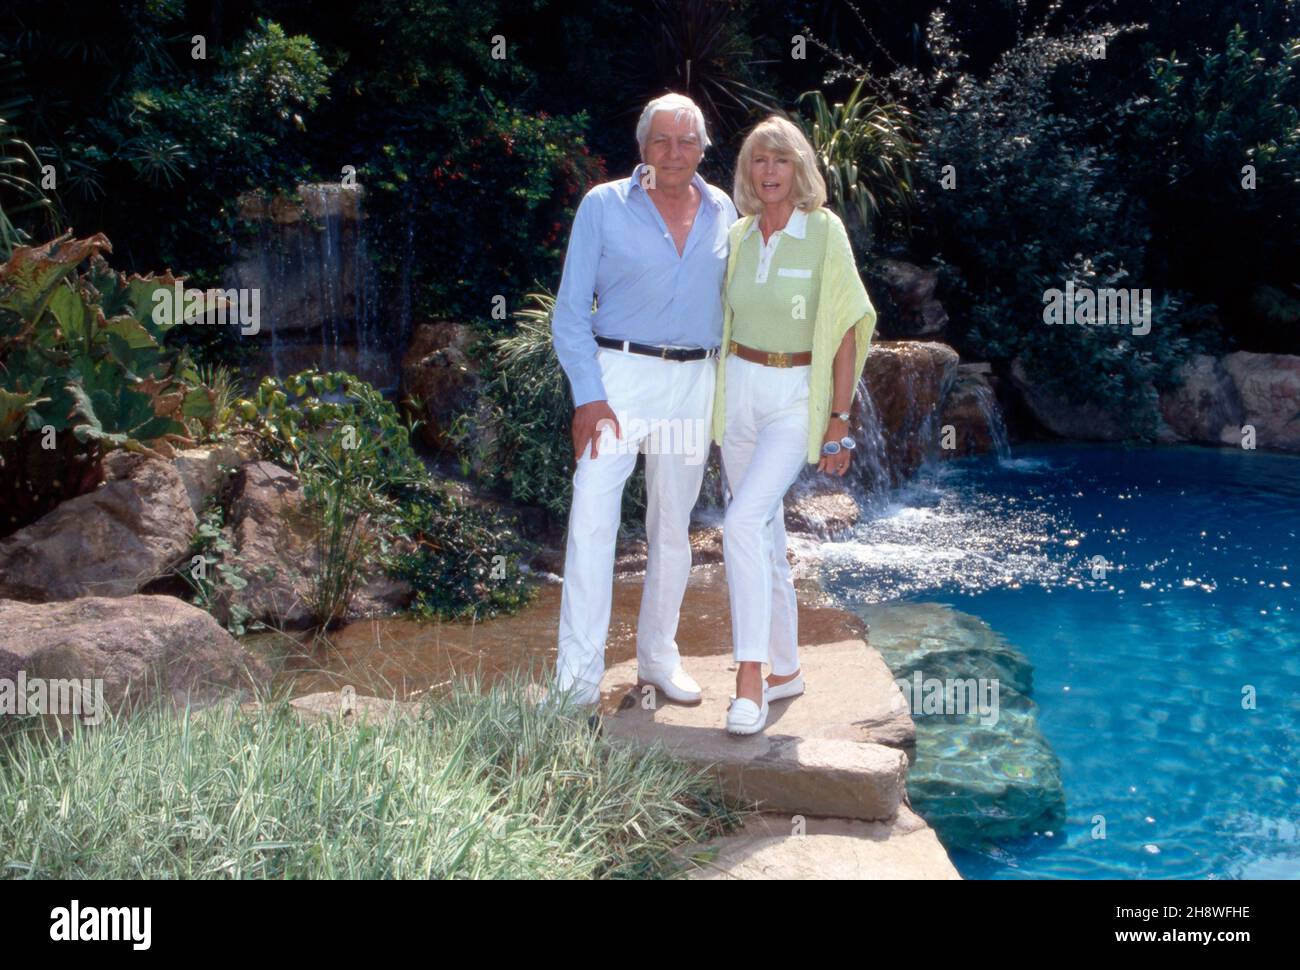 Gunter Sachs mit Ehefrau Mirja im Anwesen in St. Tropez, Frankreich 199er Jahre. Gunter Sachs, his wife Mirja at St. Tropez, France 1999s. Stock Photo